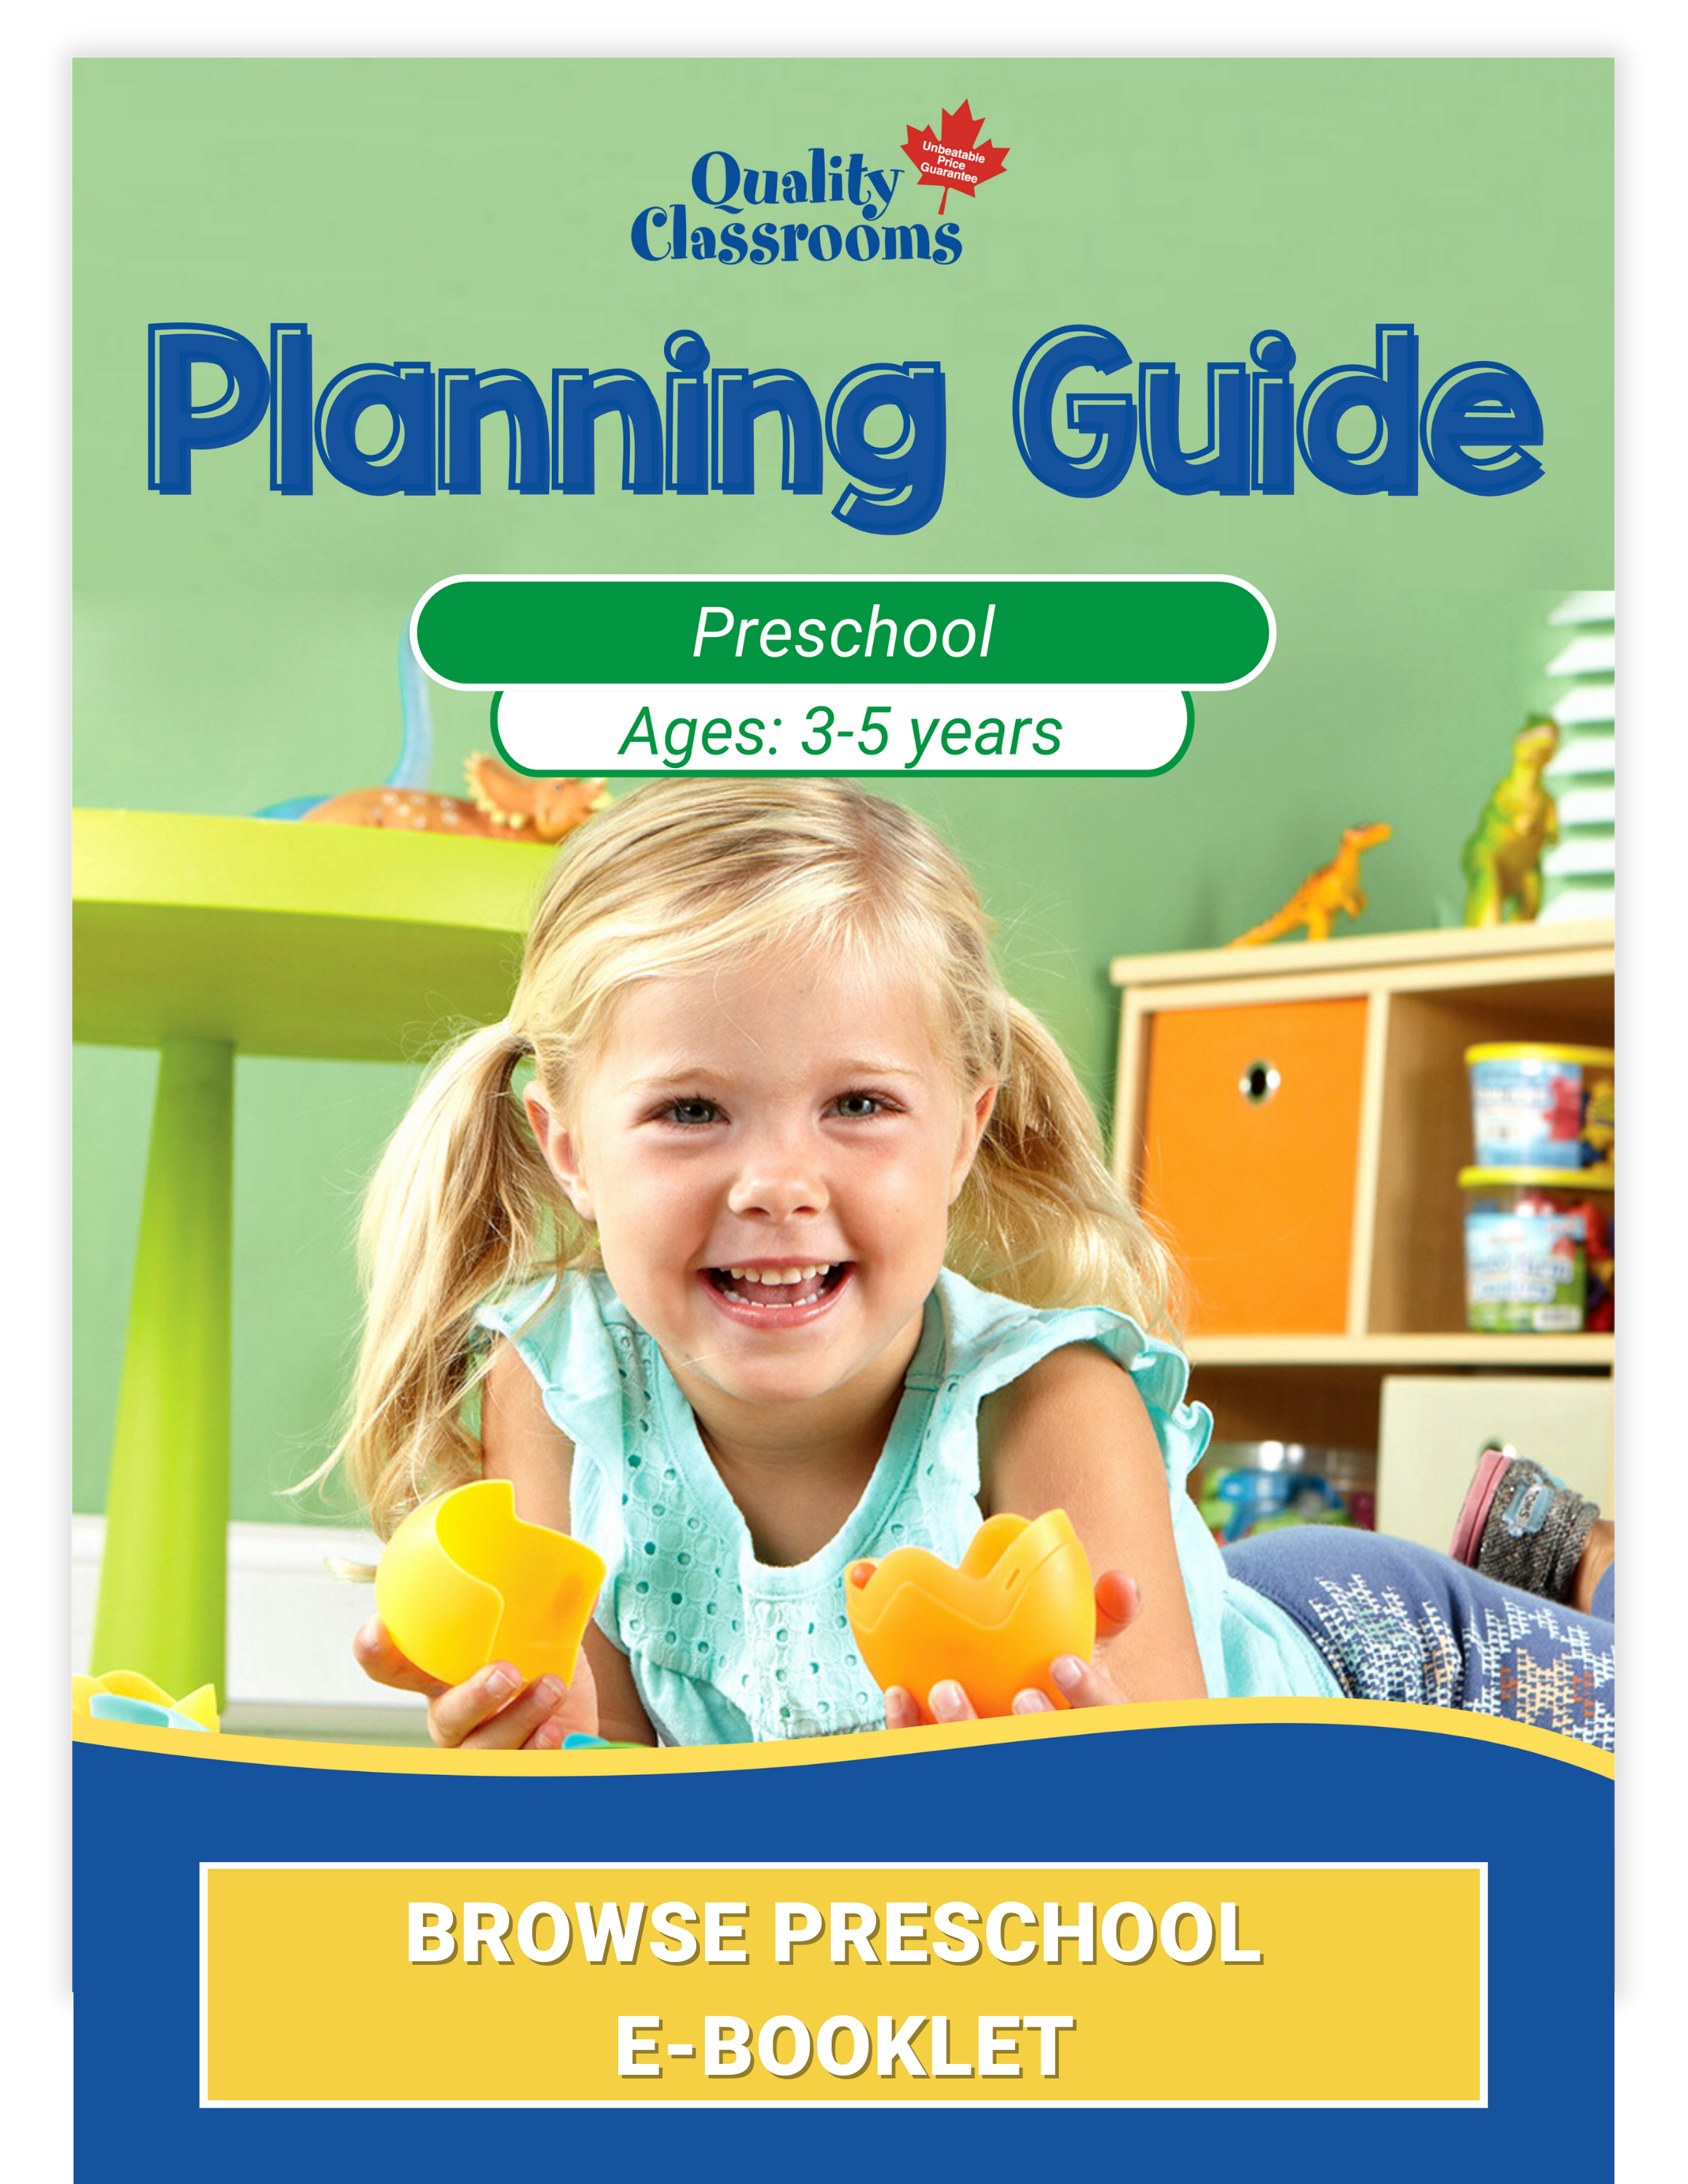 Quality Classrooms Preschool E-booklet